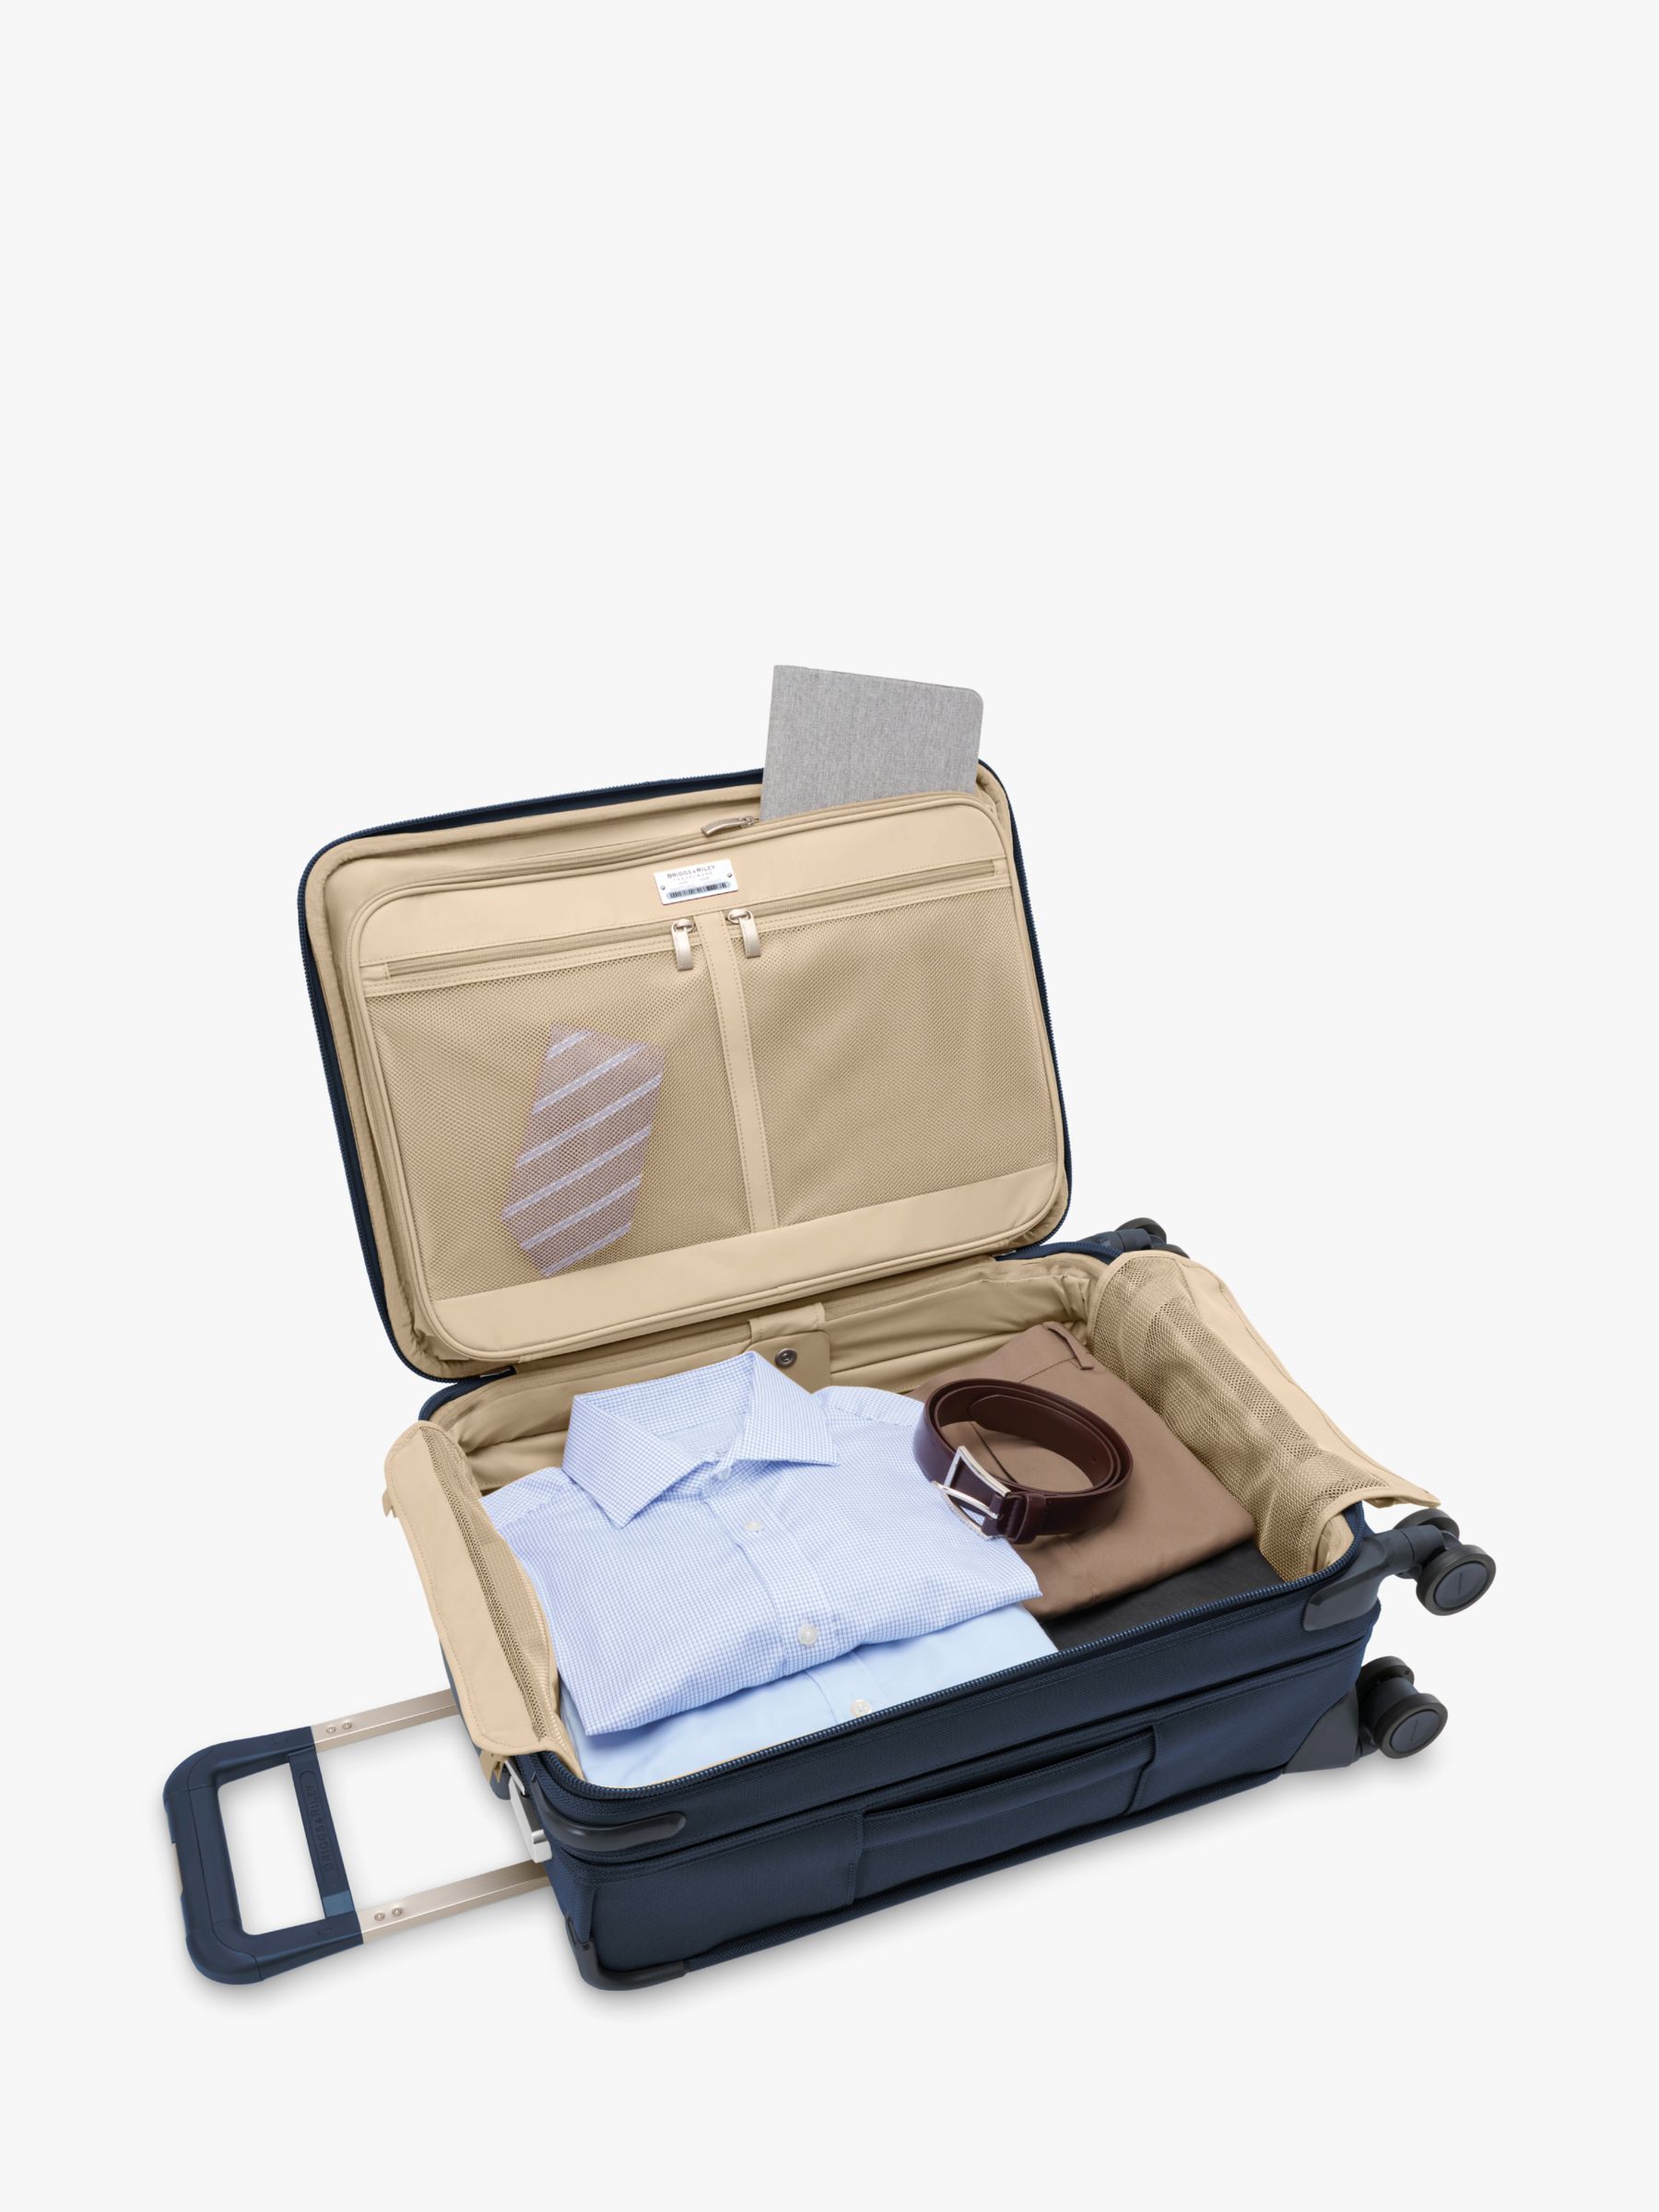 激安の (取寄) Lifetime Luggage ブリッグス Bags スーツケース